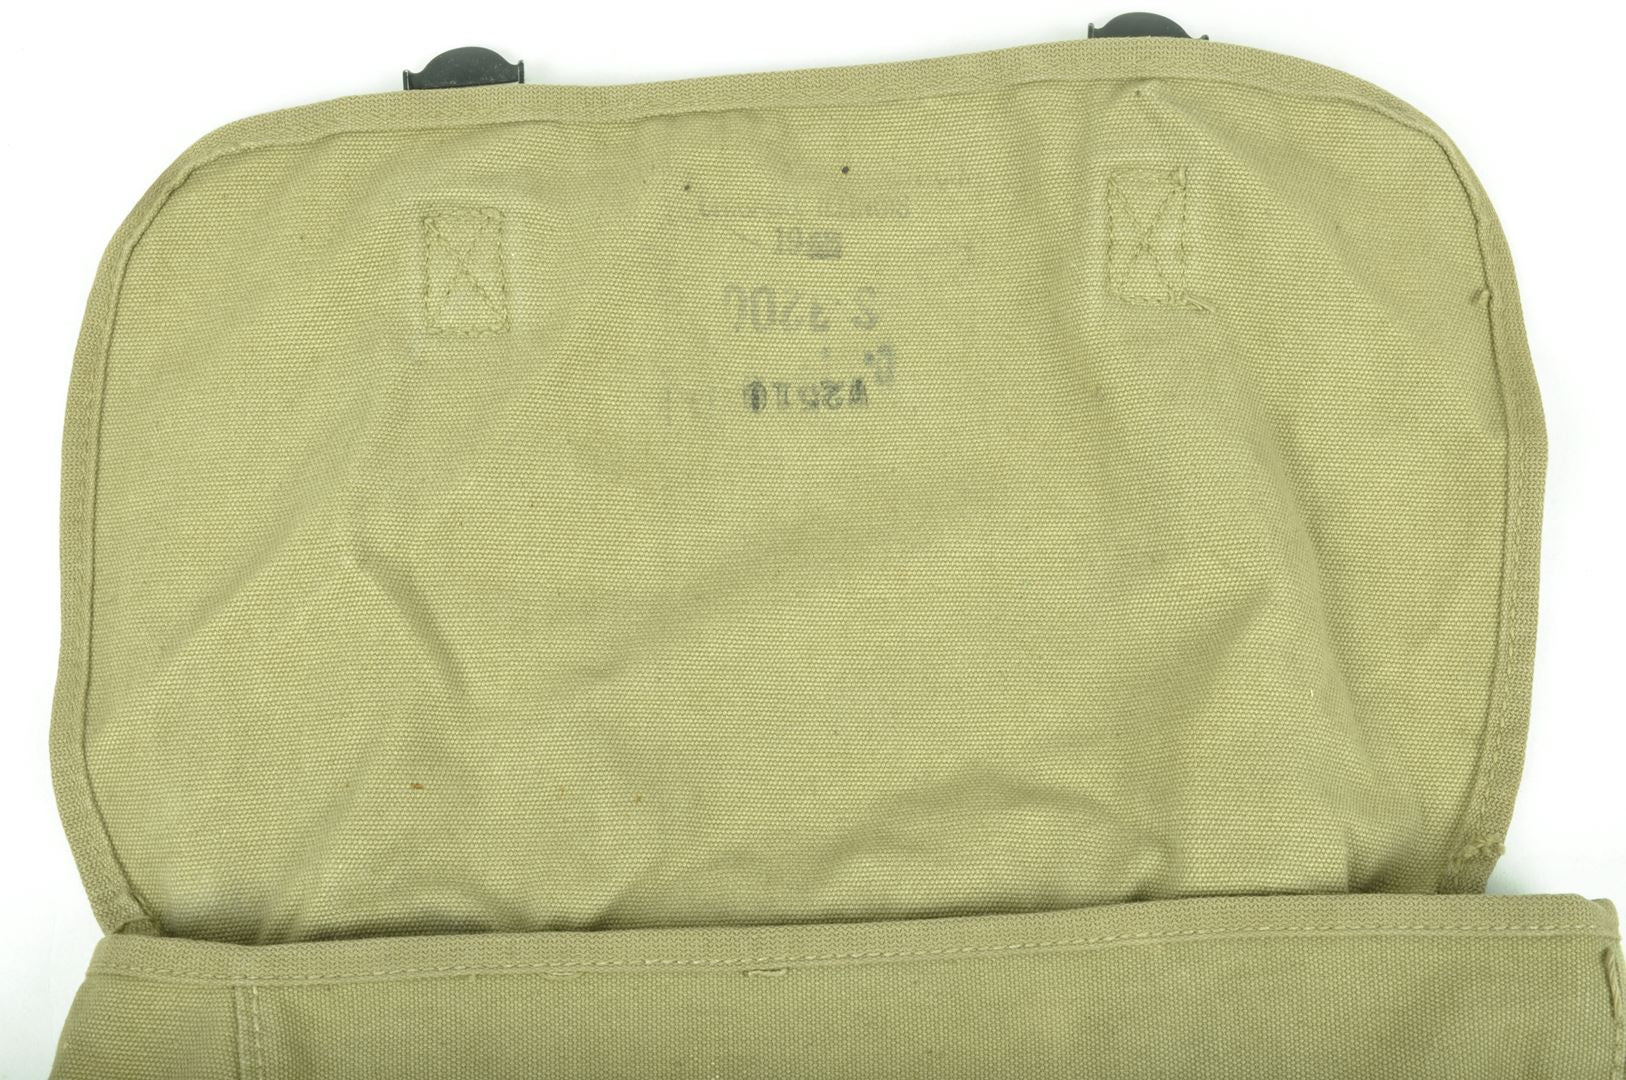 Musette M36 datée 1943 d'un Officier / Nominative